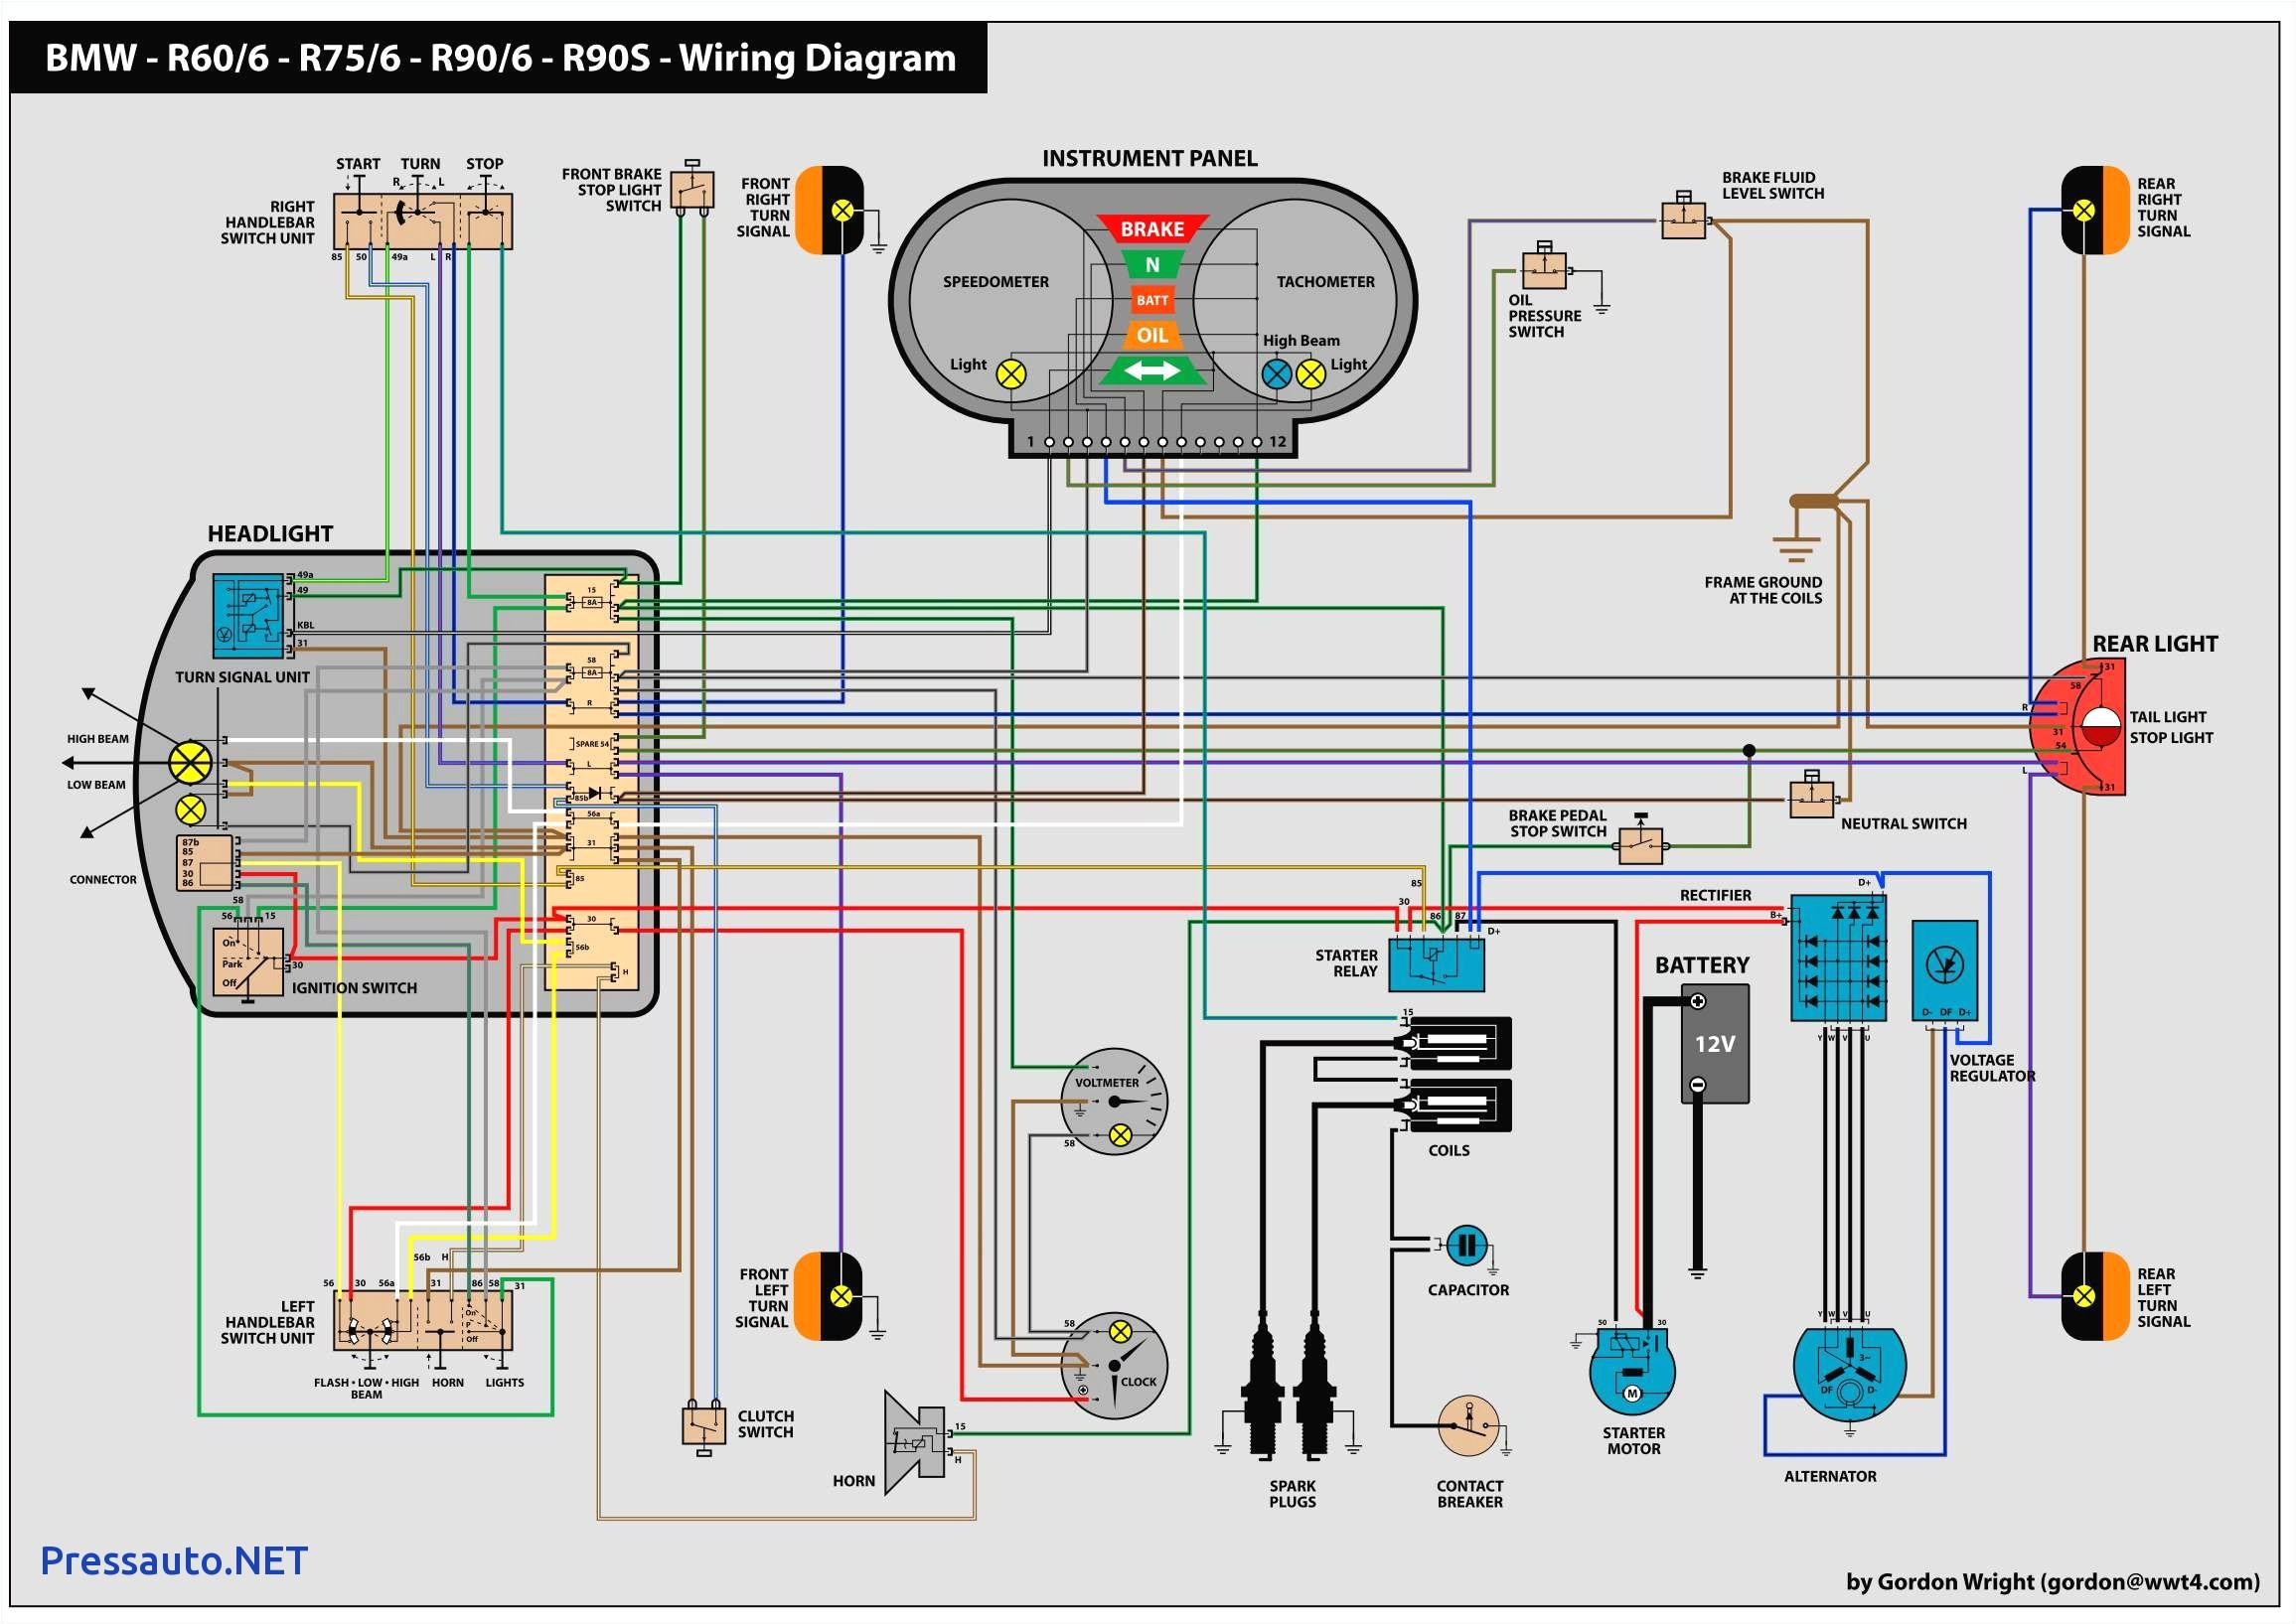 wiring diagram system bmw online best bmw wiring diagram of wiring diagram system bmw online with e30 ignition switch wiring jpg